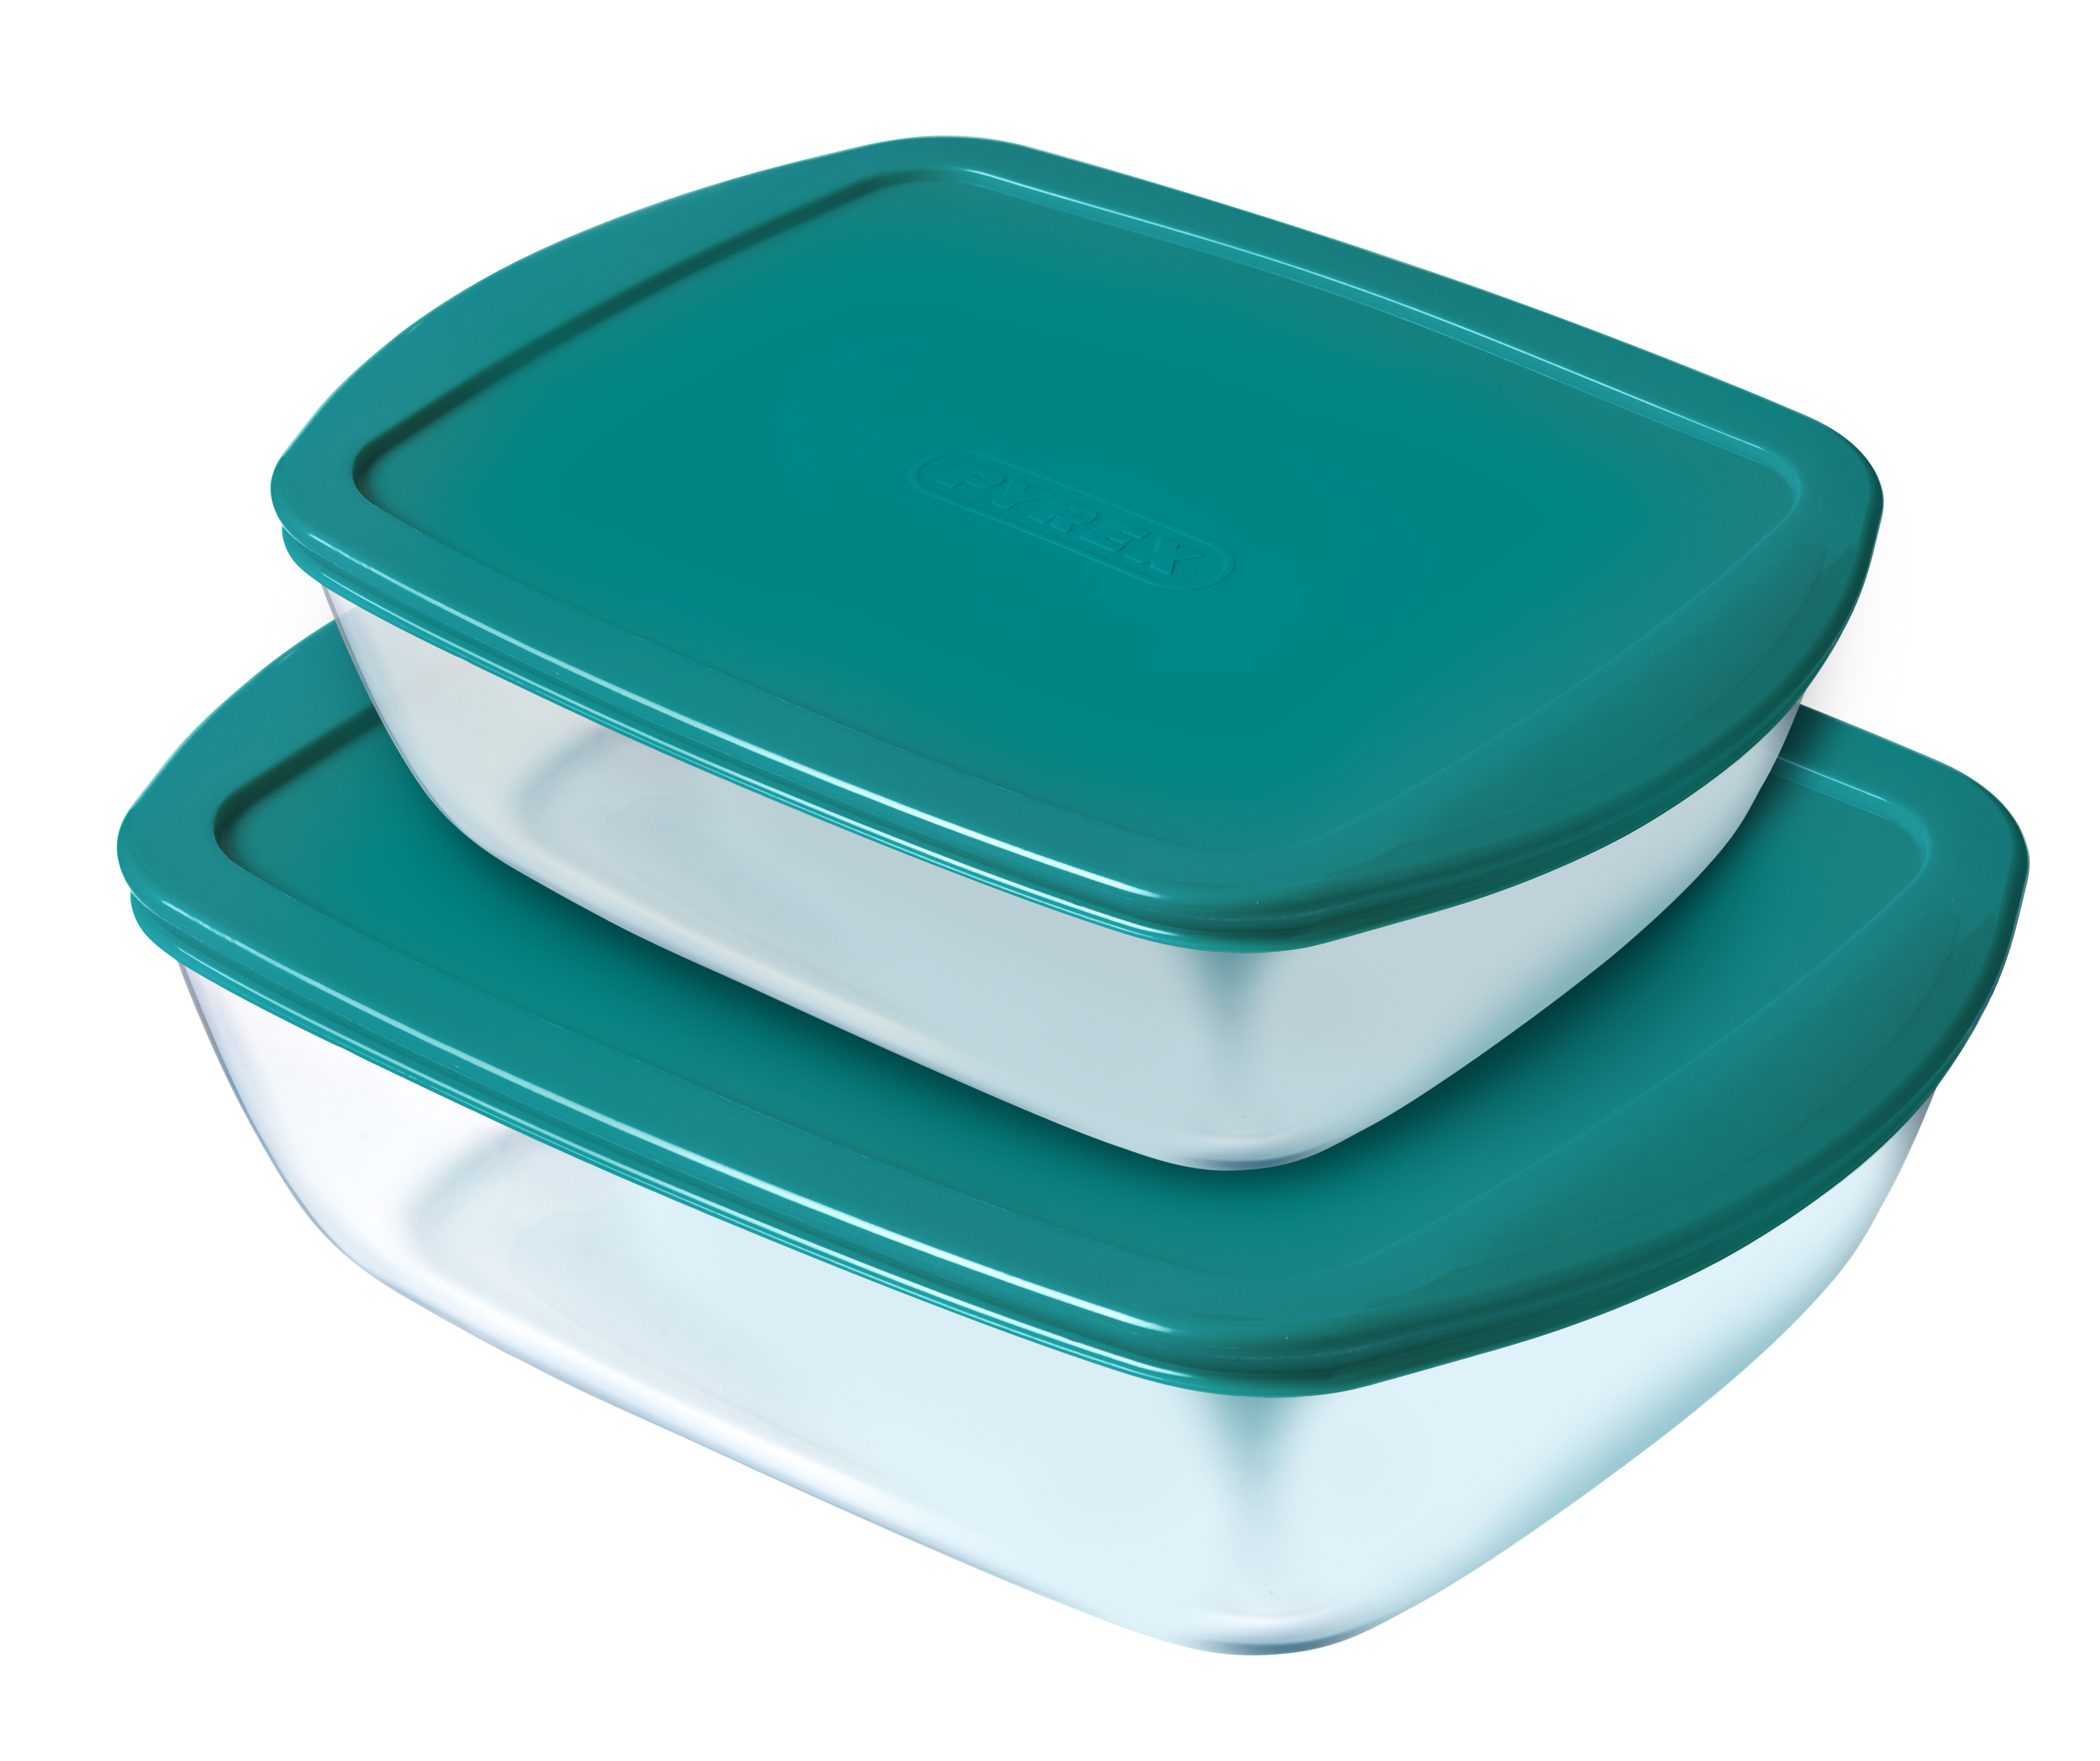 Boîte Lunchbox En Verre Avec Couverts En Plastique 1,2l